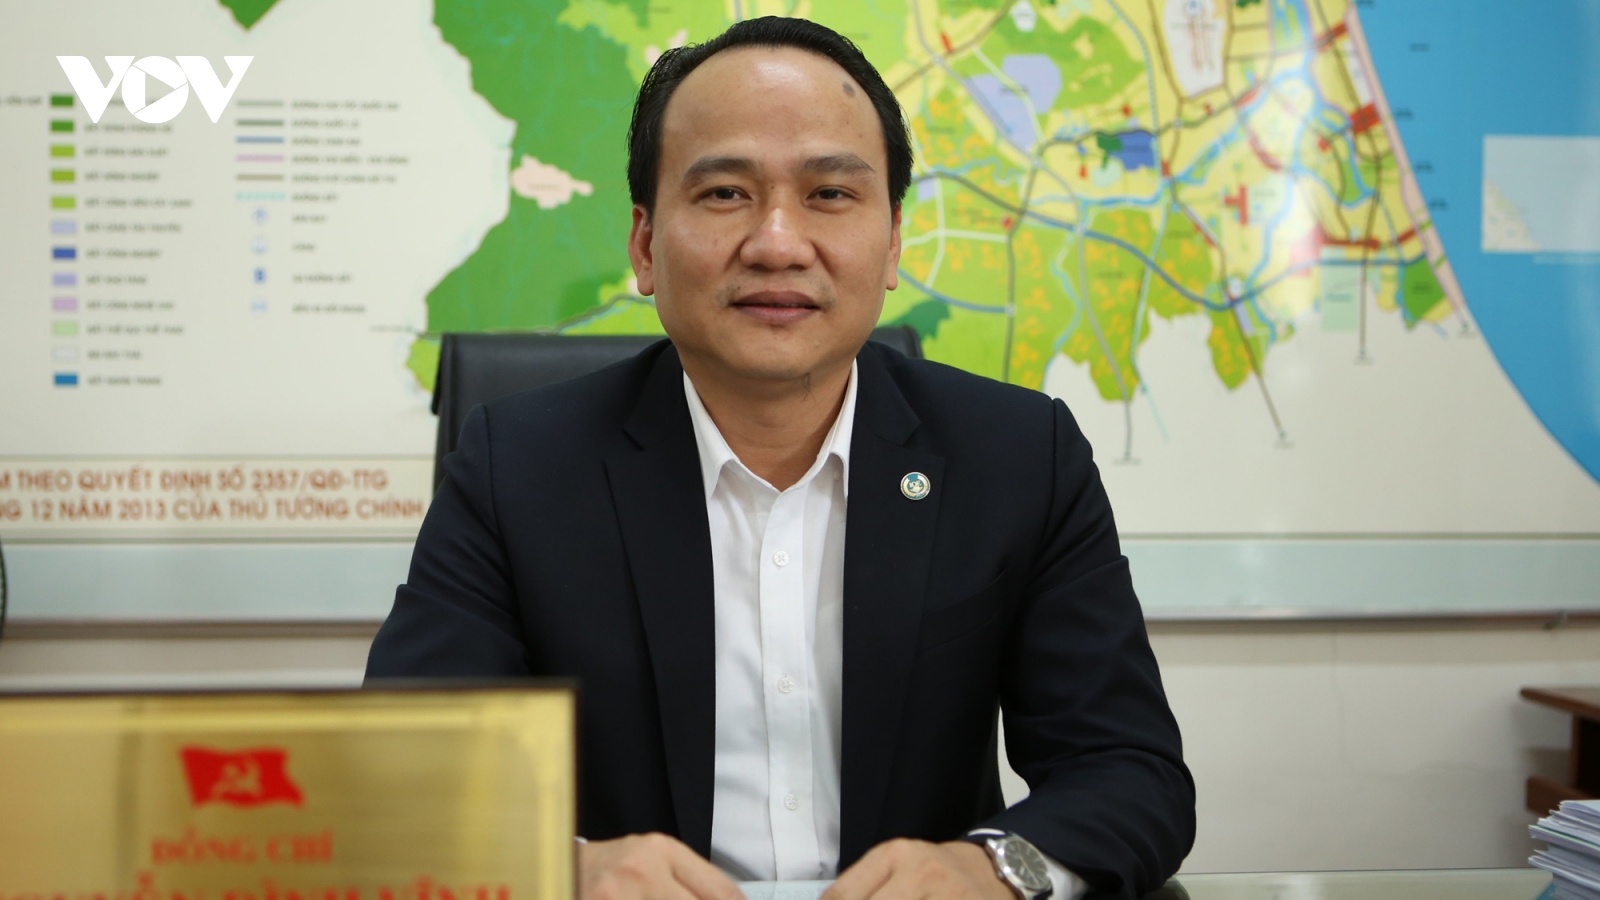 "Góp ý kiến với Đại hội XIII từ thực tiễn xây dựng của Đà Nẵng"